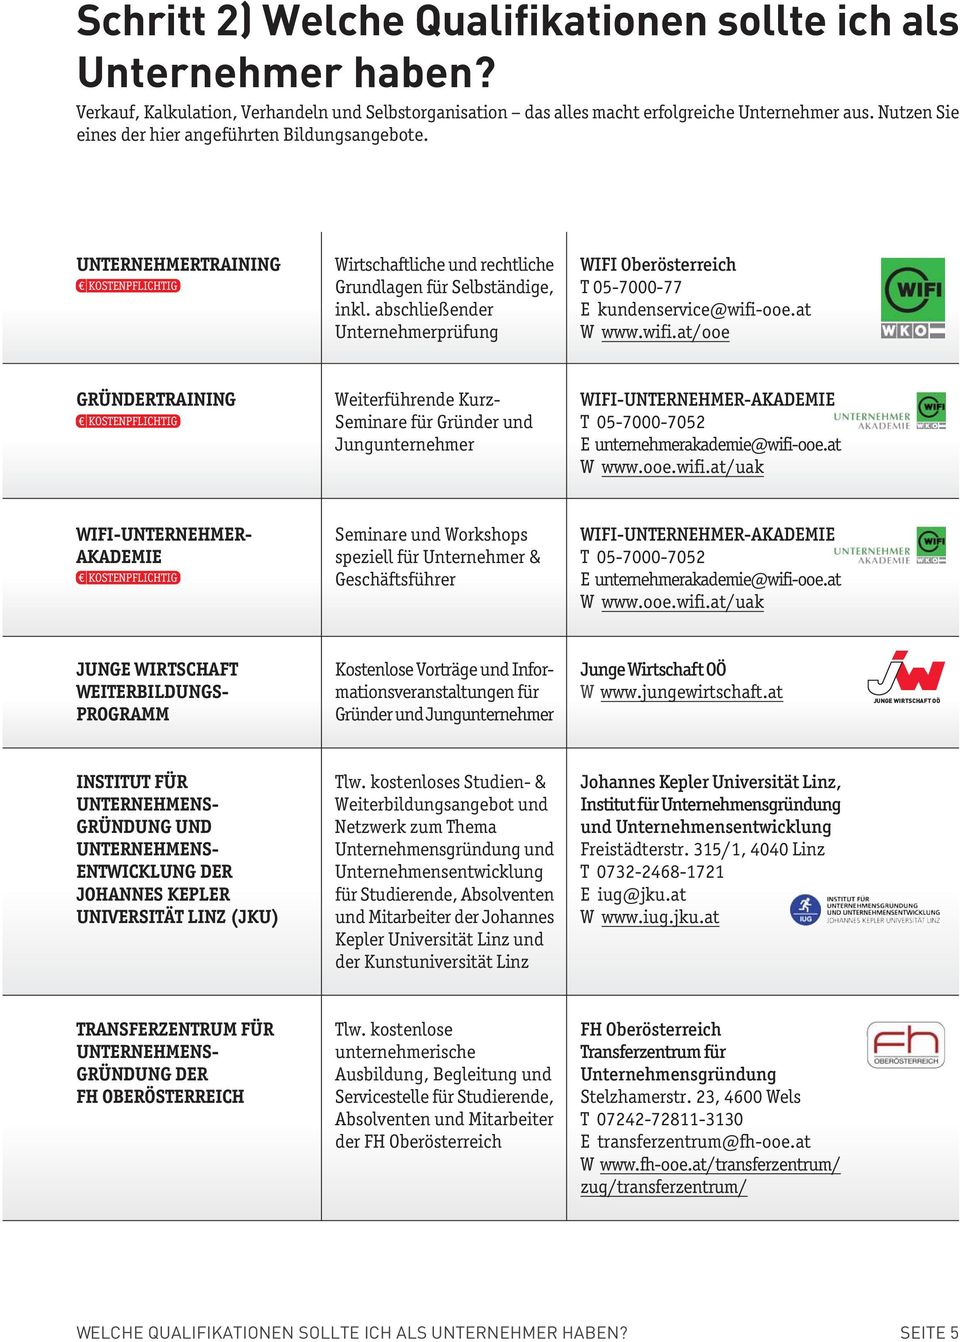 abschließender Unternehmerprüfung WIFI Oberösterreich T 05-7000-77 E kundenservice@wifi-